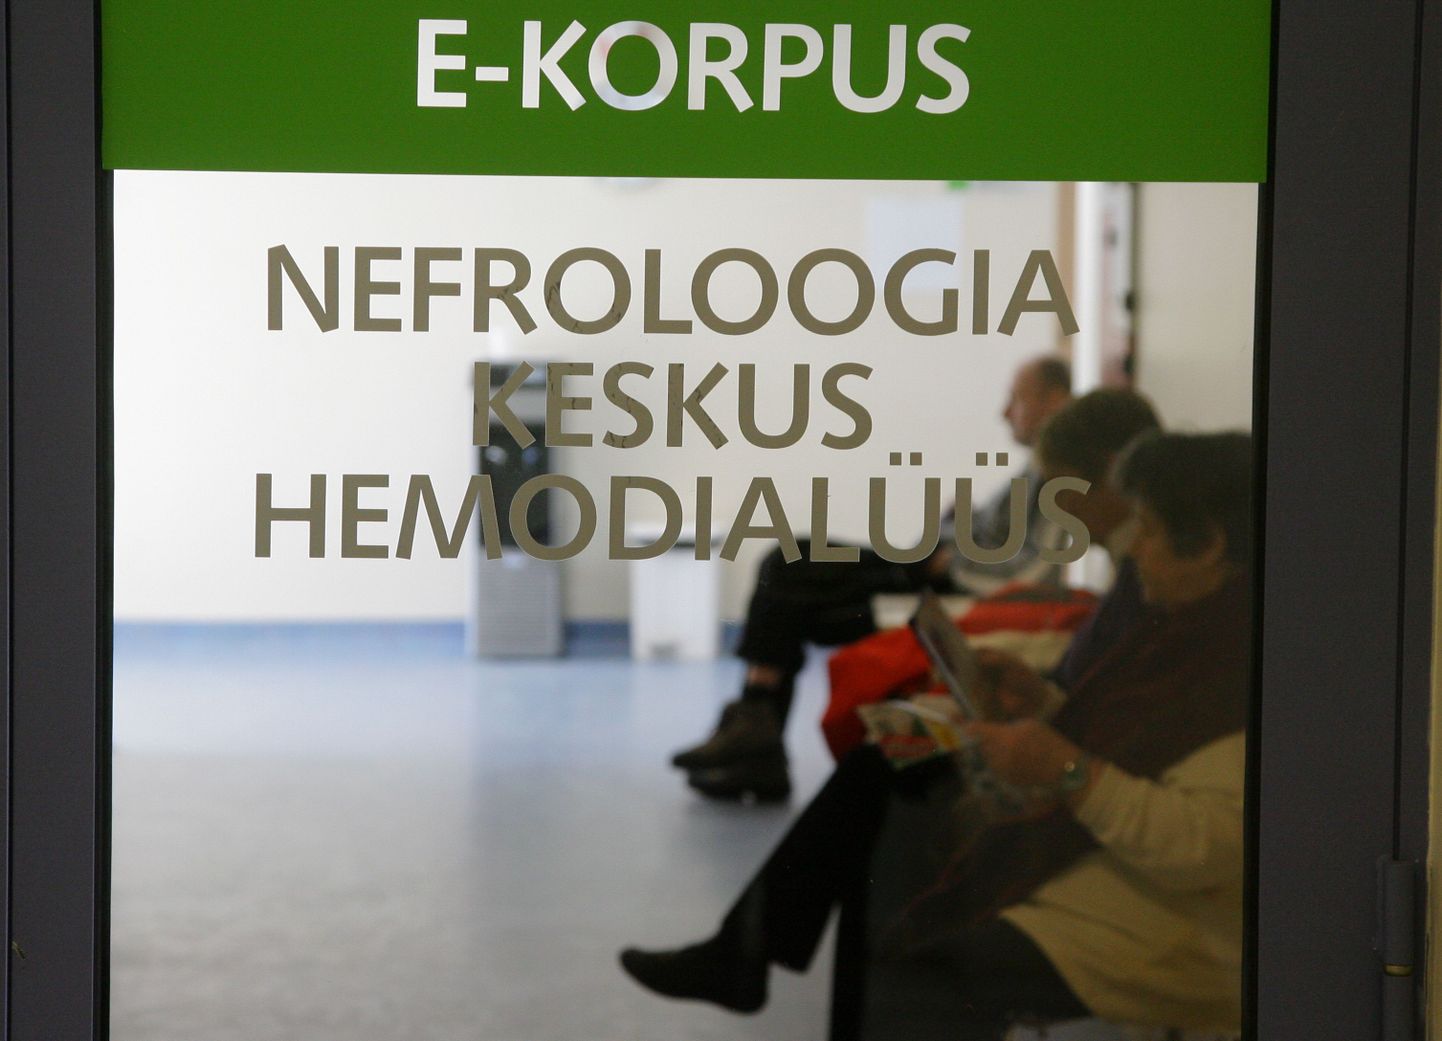 Kuigi Lääna-Tallinna keskhaiglas tehakse neeruhaigetele hemodialüüsi, ostetakse seda teenust ka sisse.